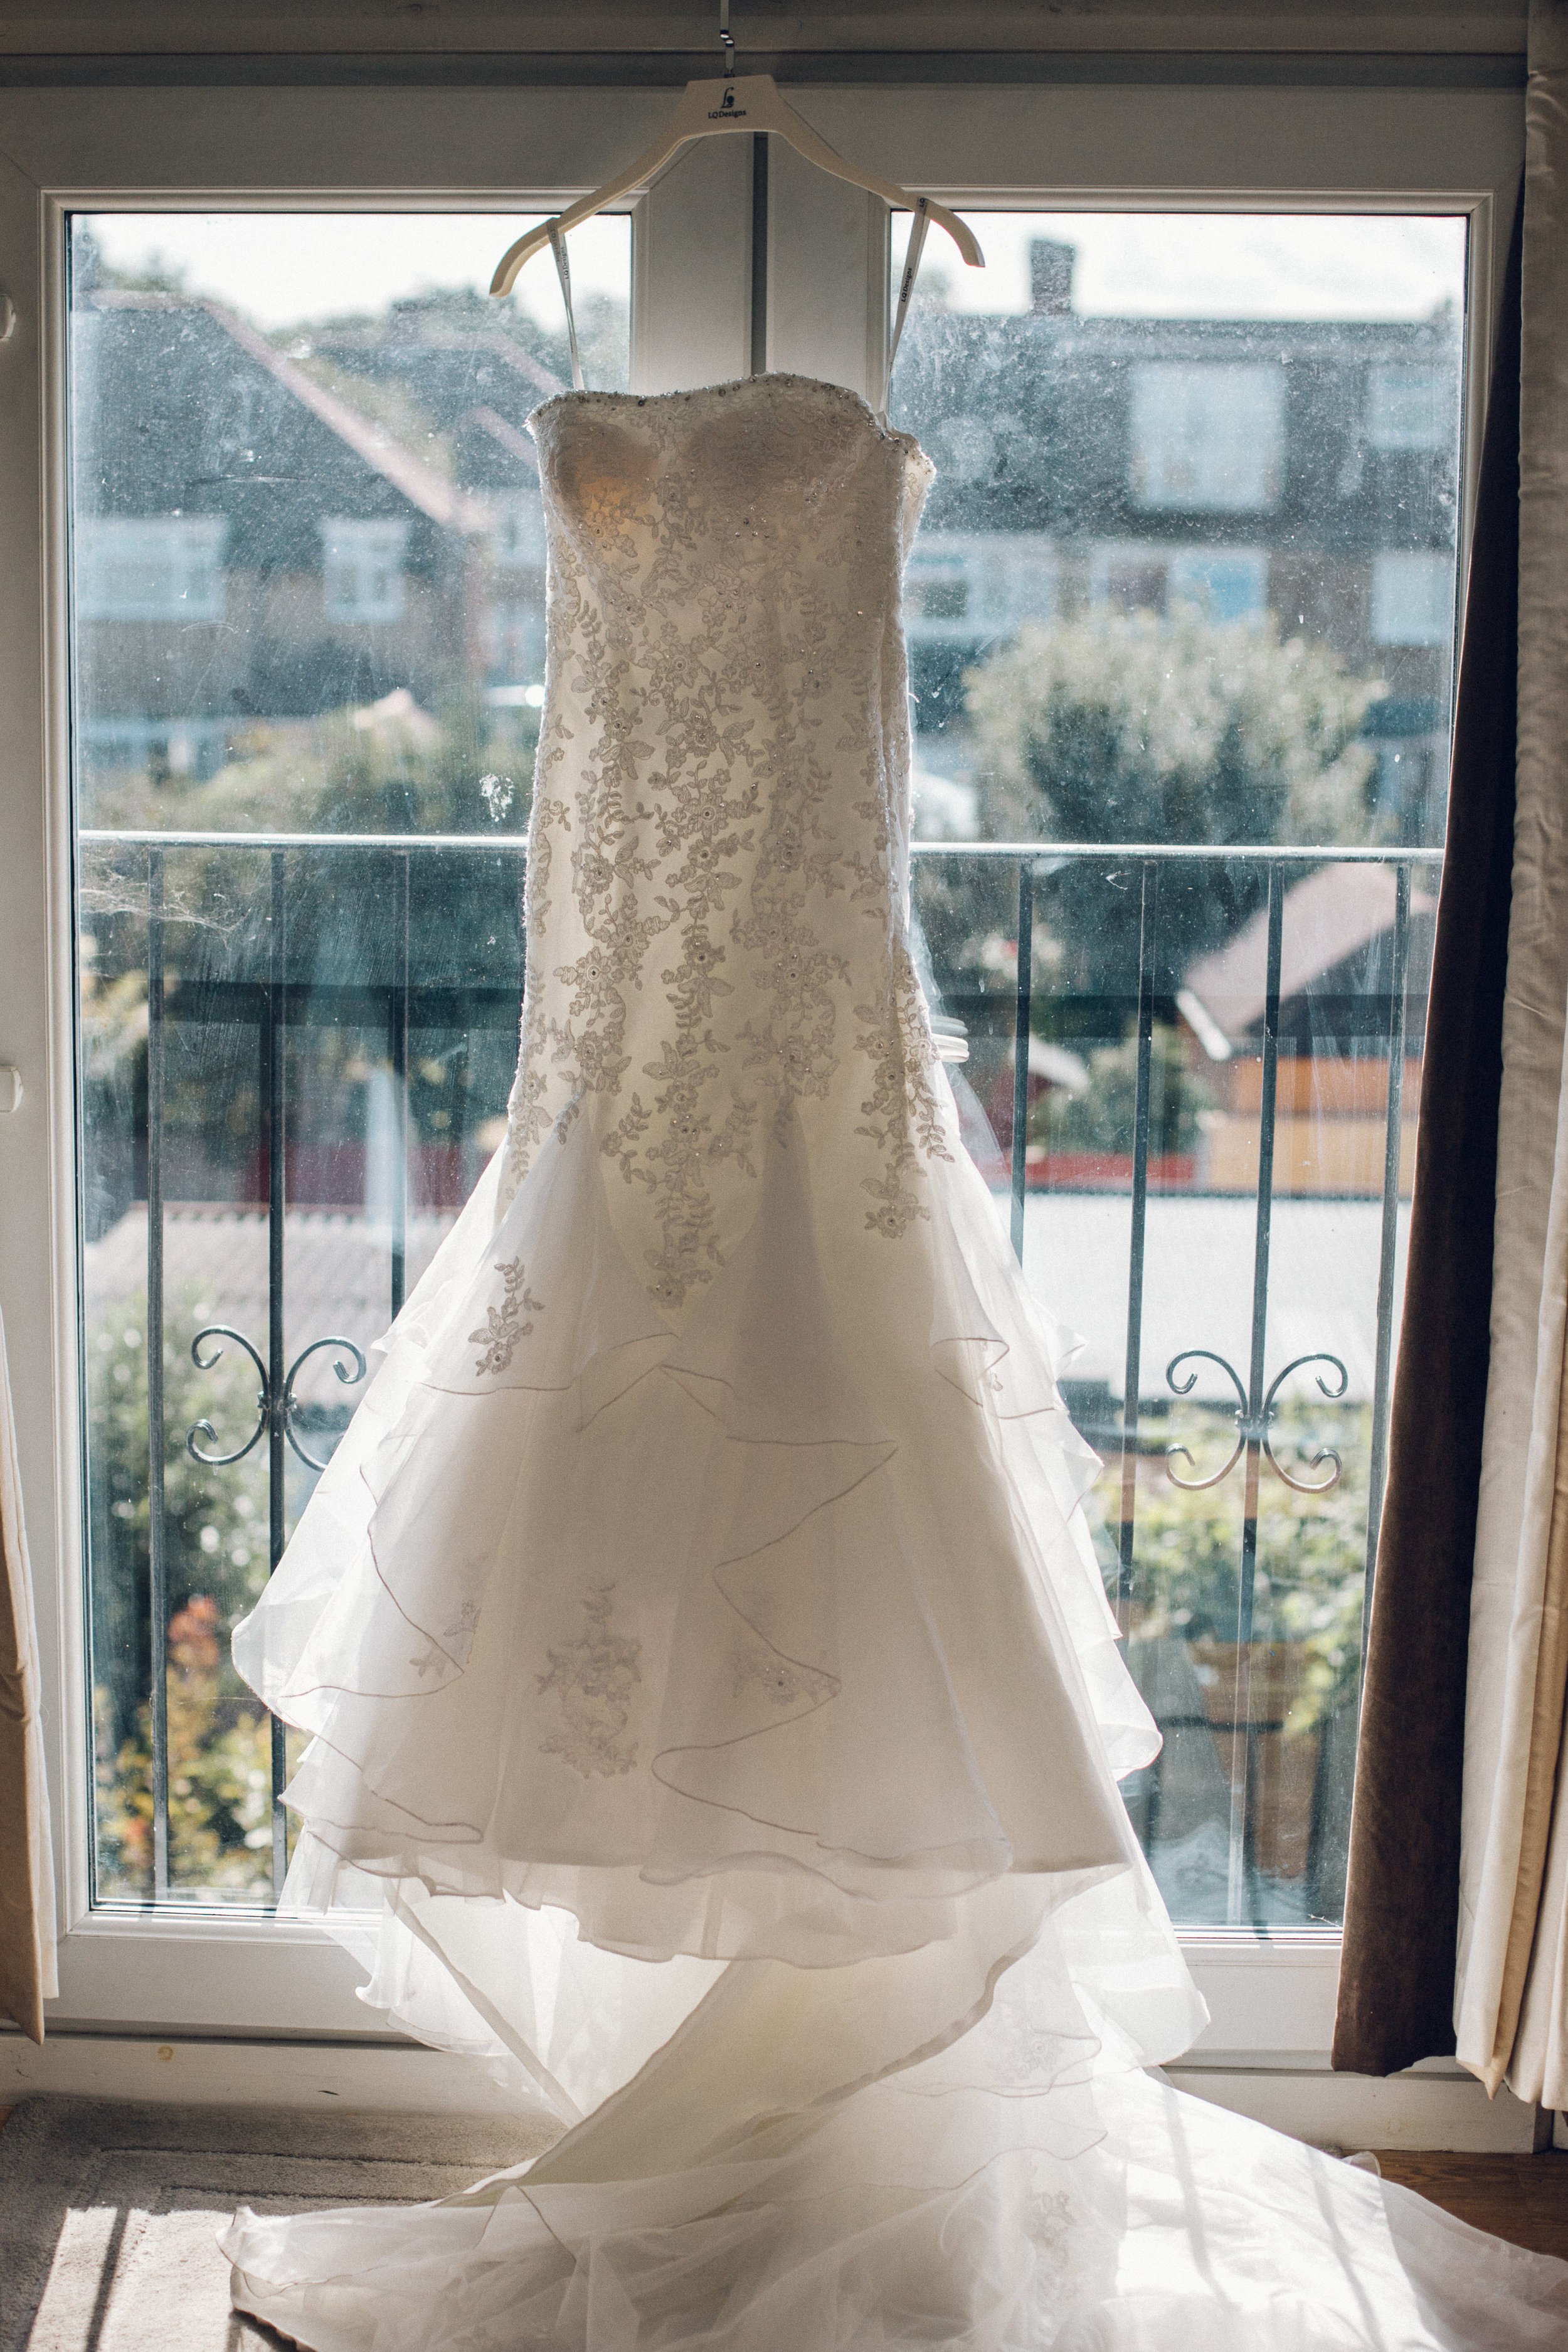 Lace wedding dress hung up